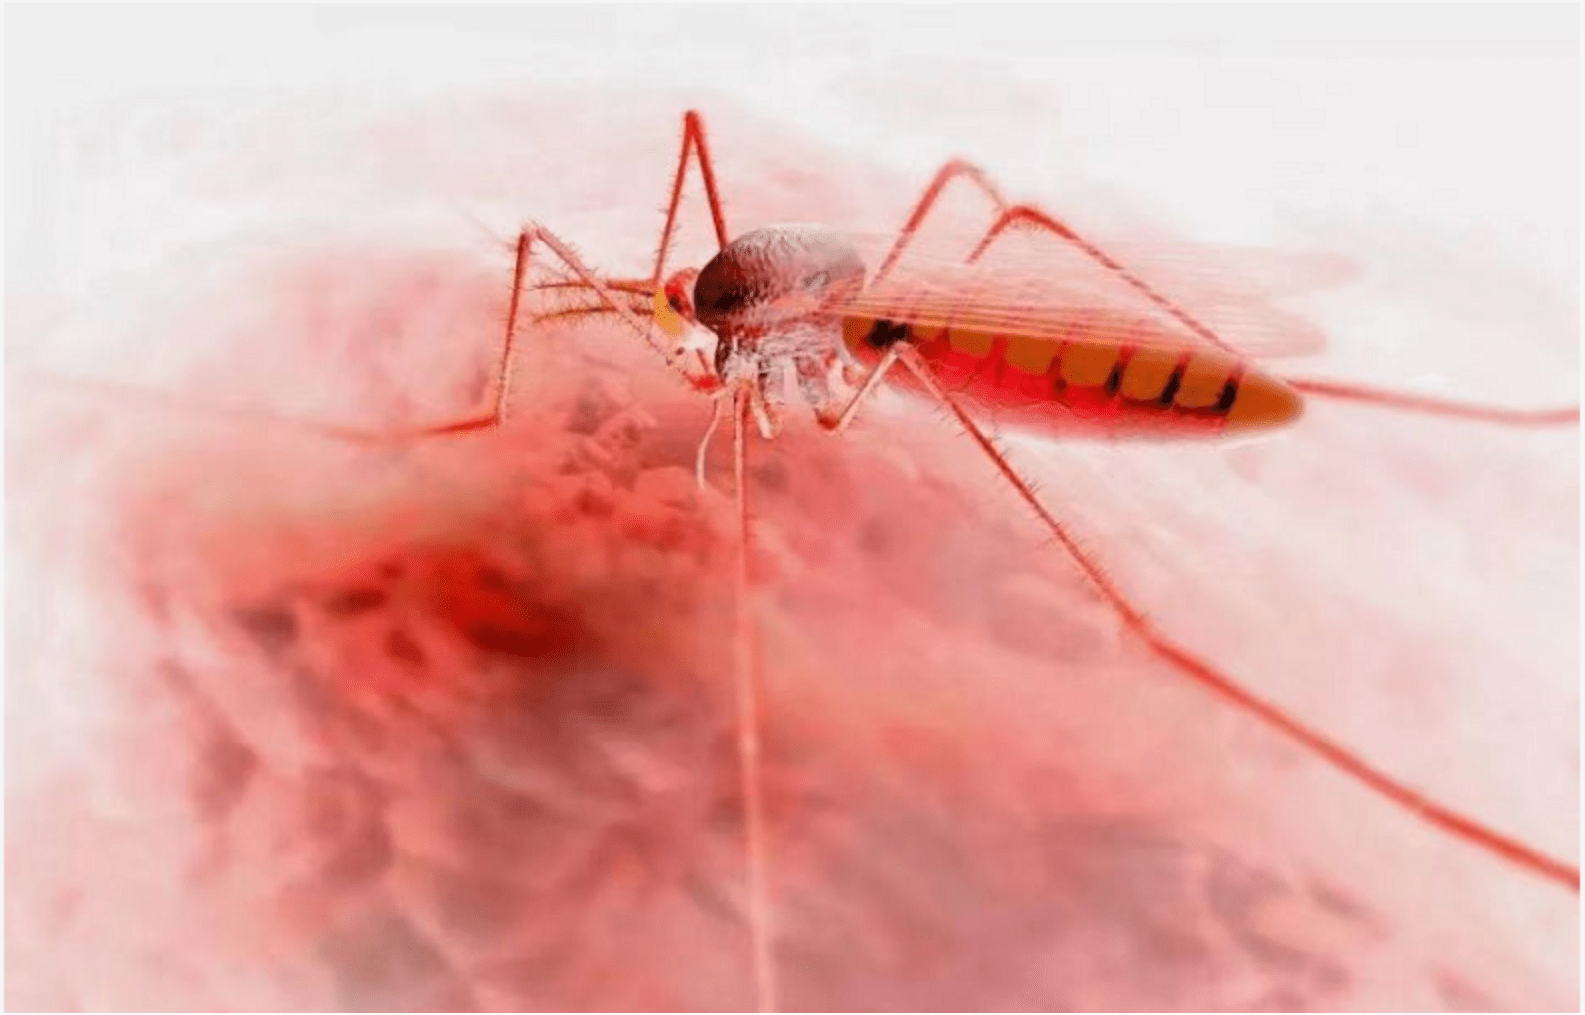 中国发现世界上最大蚊子?!! 是谣言么? 新闻报道半真半假?_哔哩哔哩_bilibili